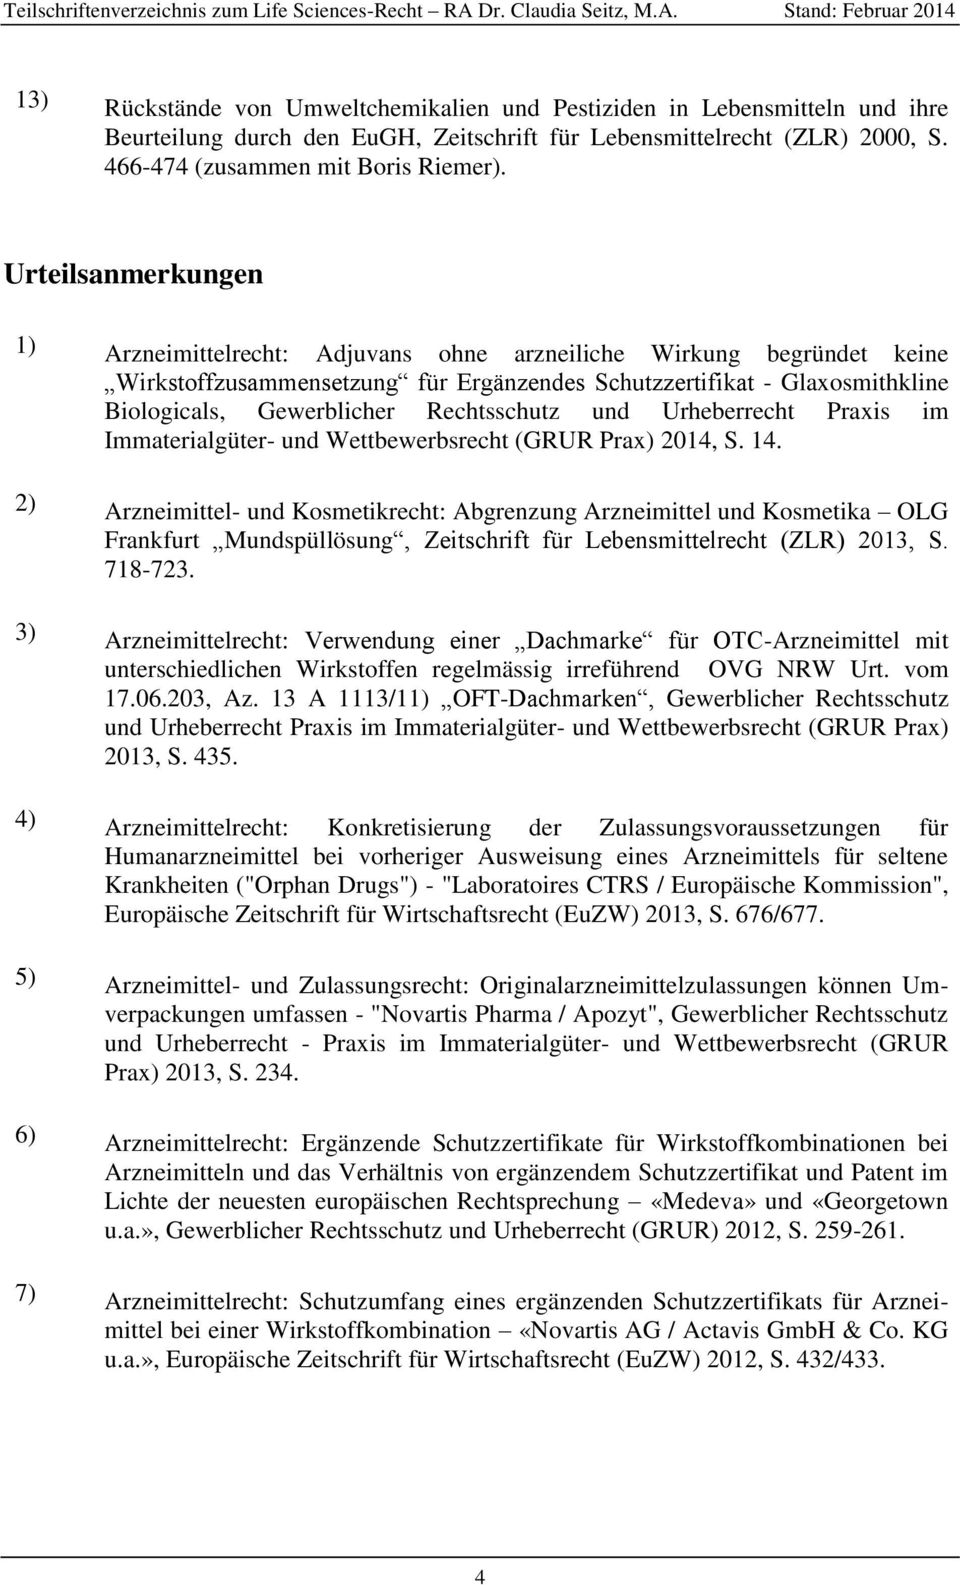 Rechtsschutz und Urheberrecht Praxis im Immaterialgüter- und Wettbewerbsrecht (GRUR Prax) 2014, S. 14.